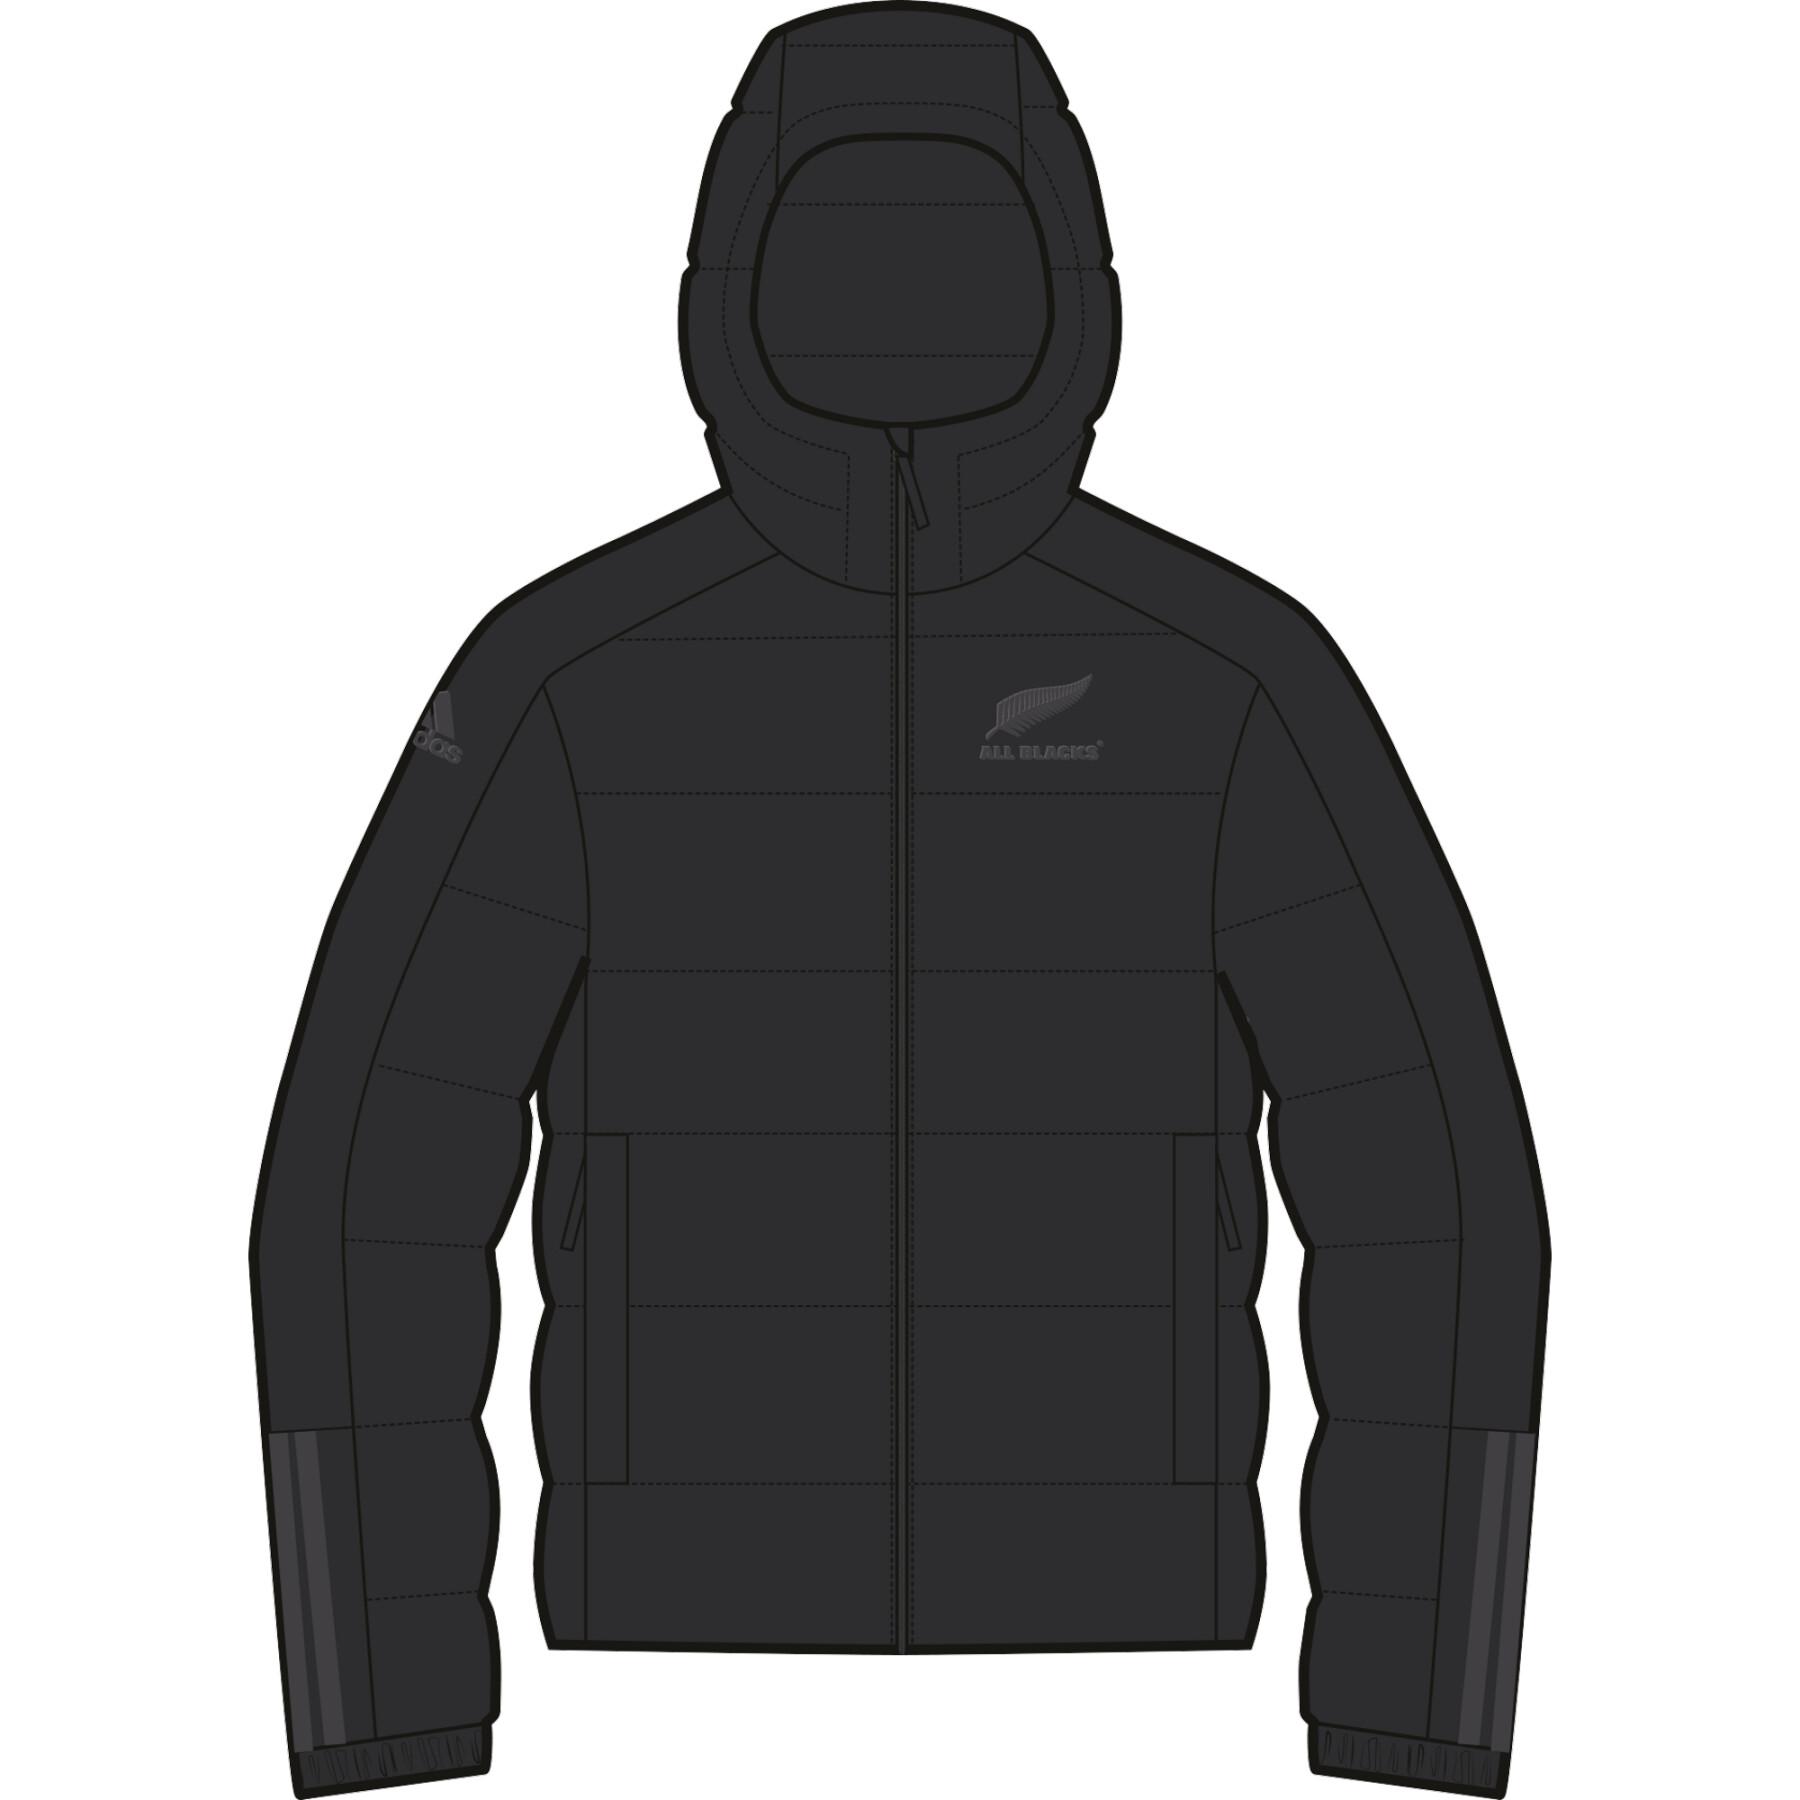 New Zealand Jacket All Blacks Lifestyle 2021/22